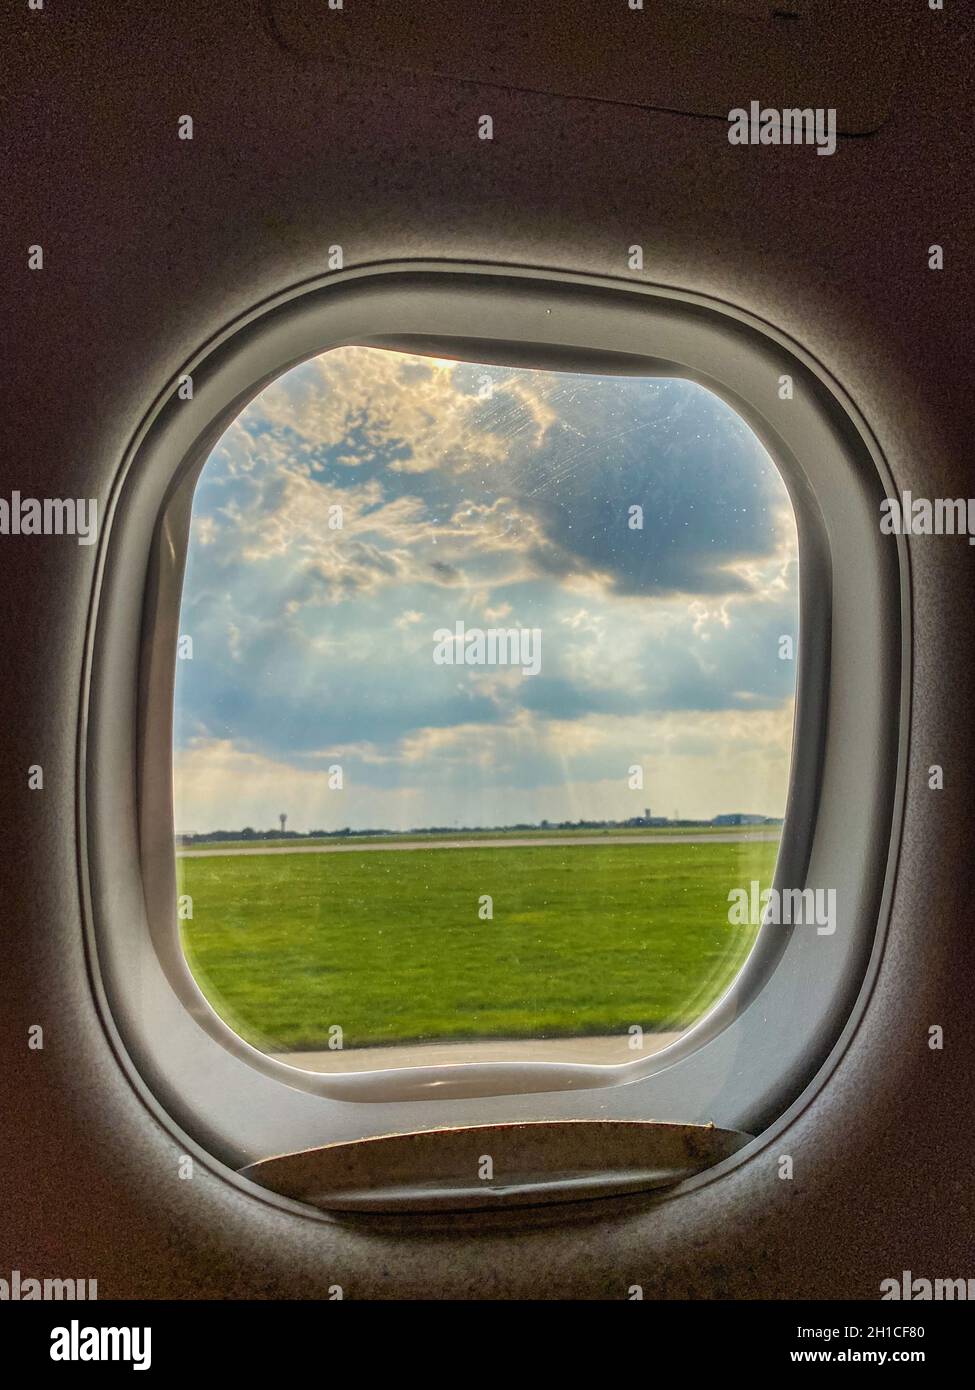 Airfield de l'aéroport vu à travers une fenêtre d'avion avant le décollage ou après l'atterrissage Banque D'Images